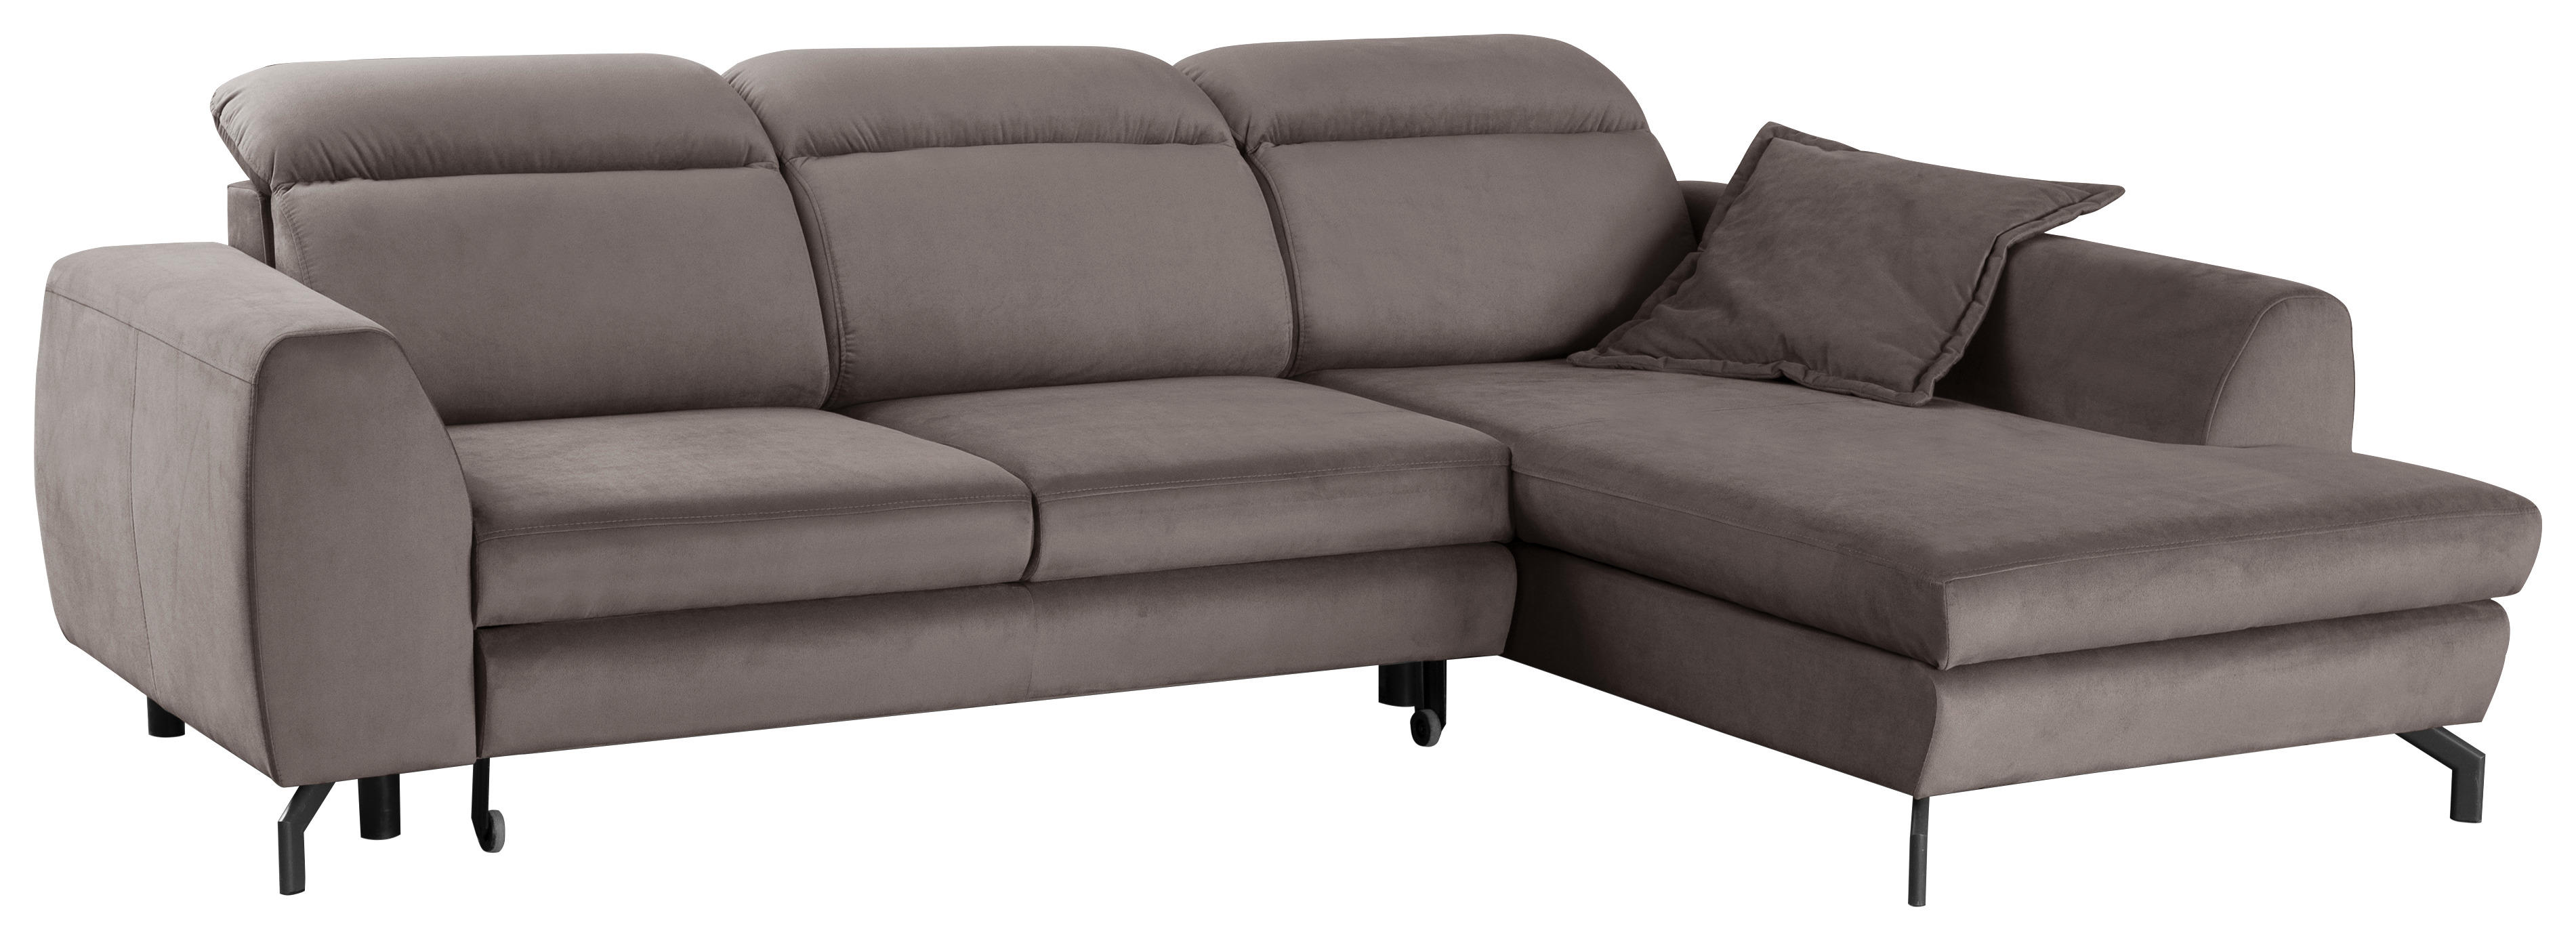 Poco couch mit schlaffunktion - Unser Favorit 